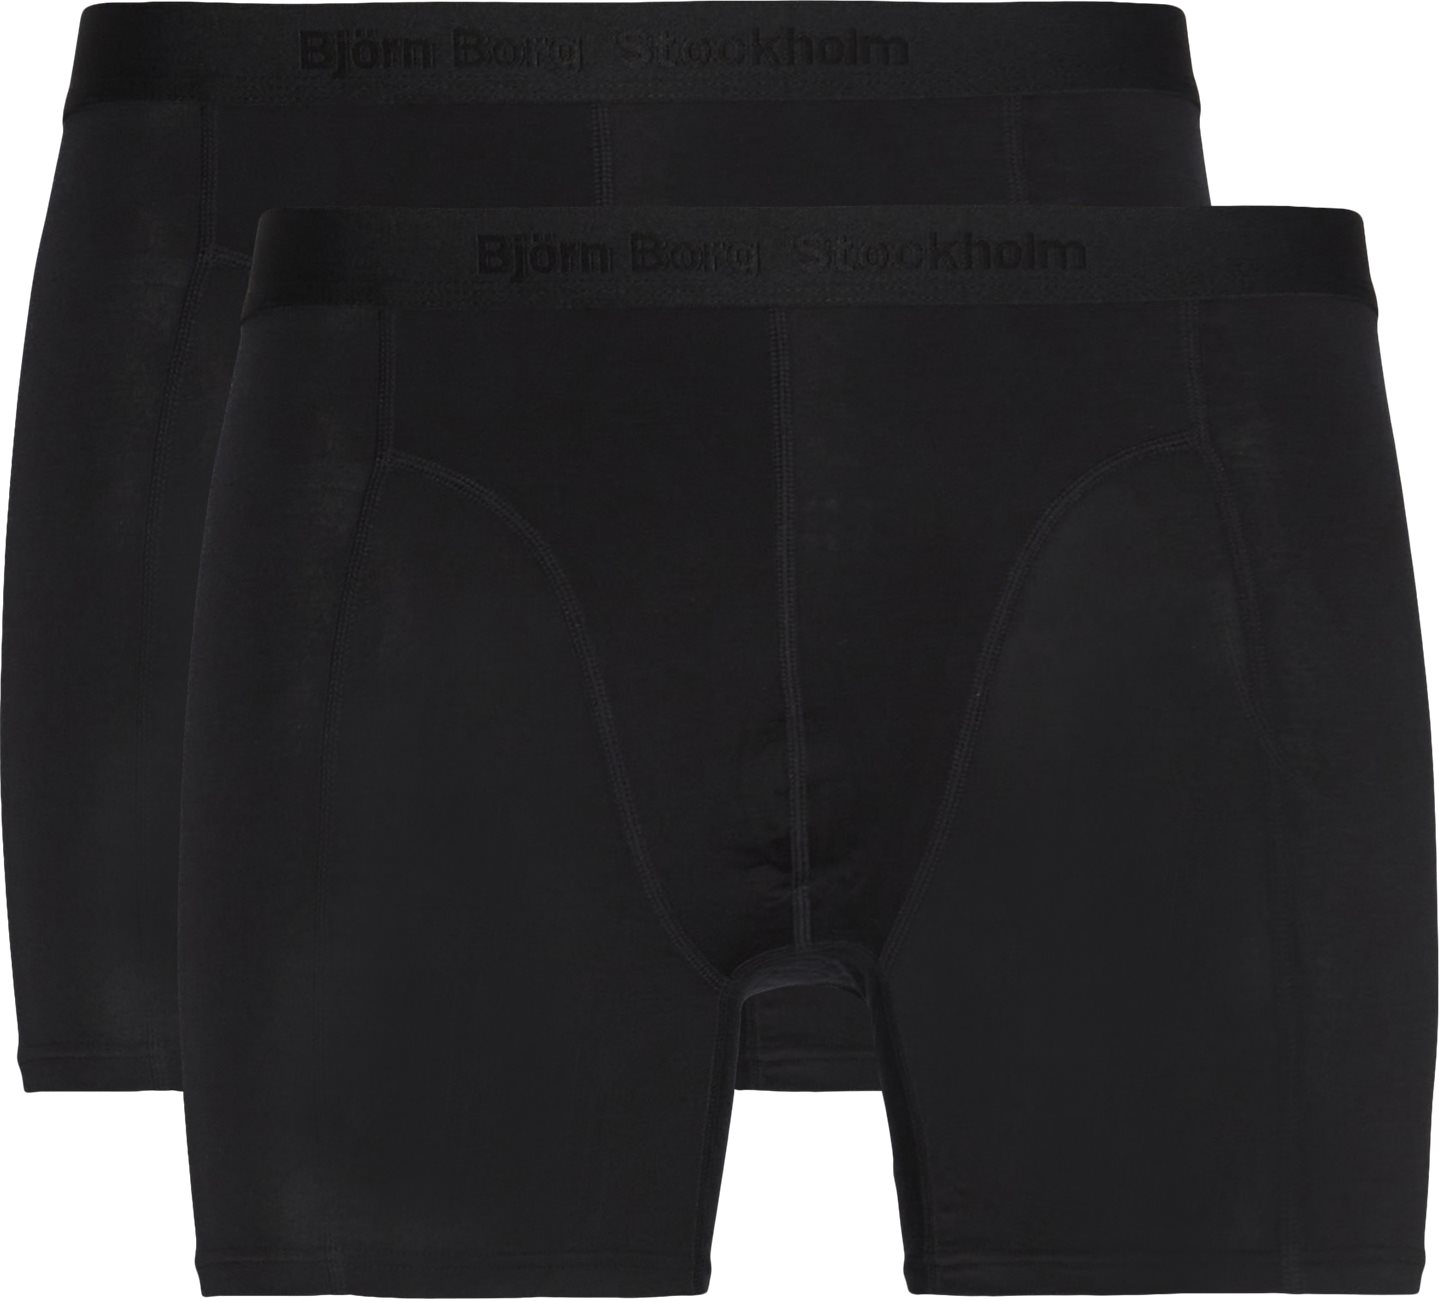 Tencel Trunks - Underwear - Black